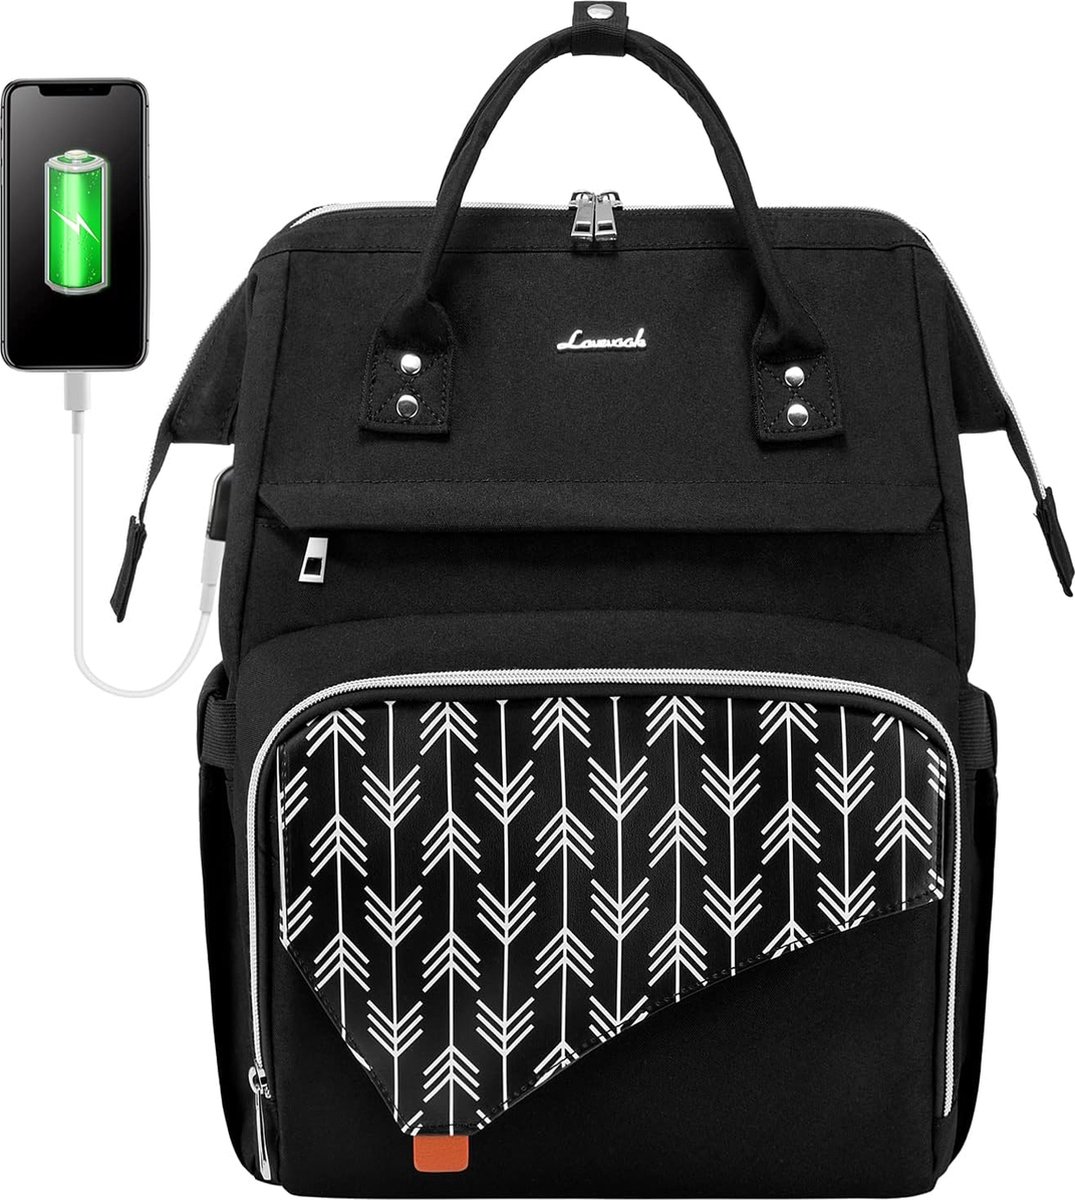 Laptoprugzak 17 inch voor dames - Zwart met print - USB-oplaadpoort - Anti-diefstaltas - Waterdicht - Werk, school, reizen